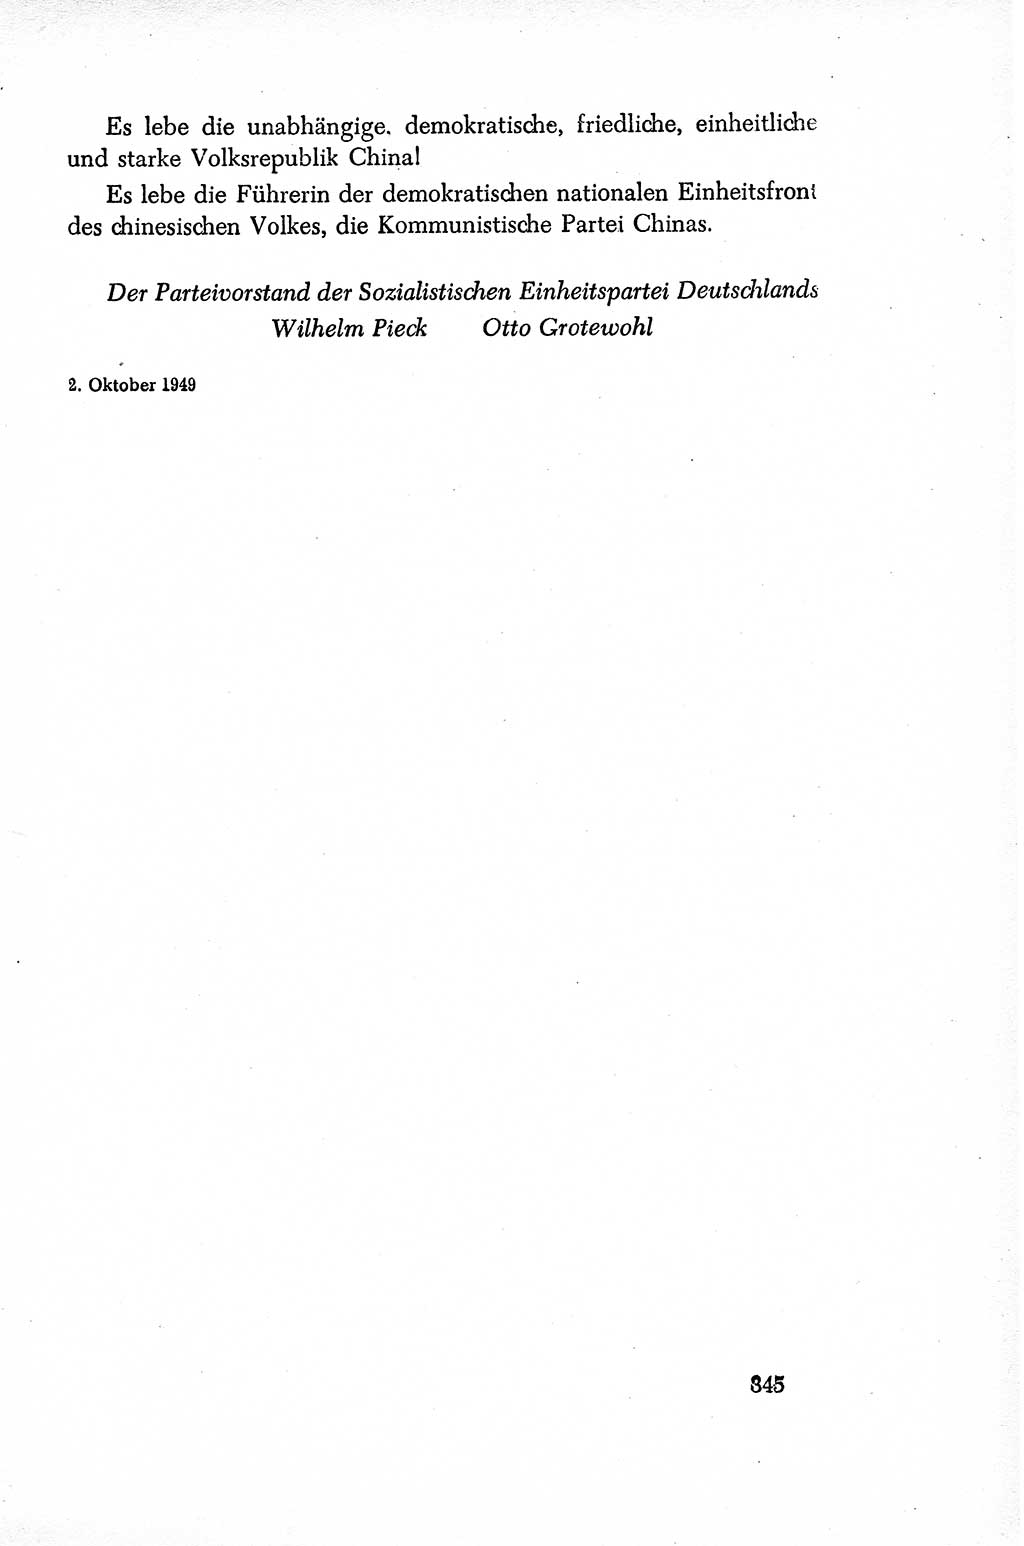 Dokumente der Sozialistischen Einheitspartei Deutschlands (SED) [Sowjetische Besatzungszone (SBZ) Deutschlands/Deutsche Demokratische Republik (DDR)] 1948-1950, Seite 345 (Dok. SED SBZ Dtl. DDR 1948-1950, S. 345)